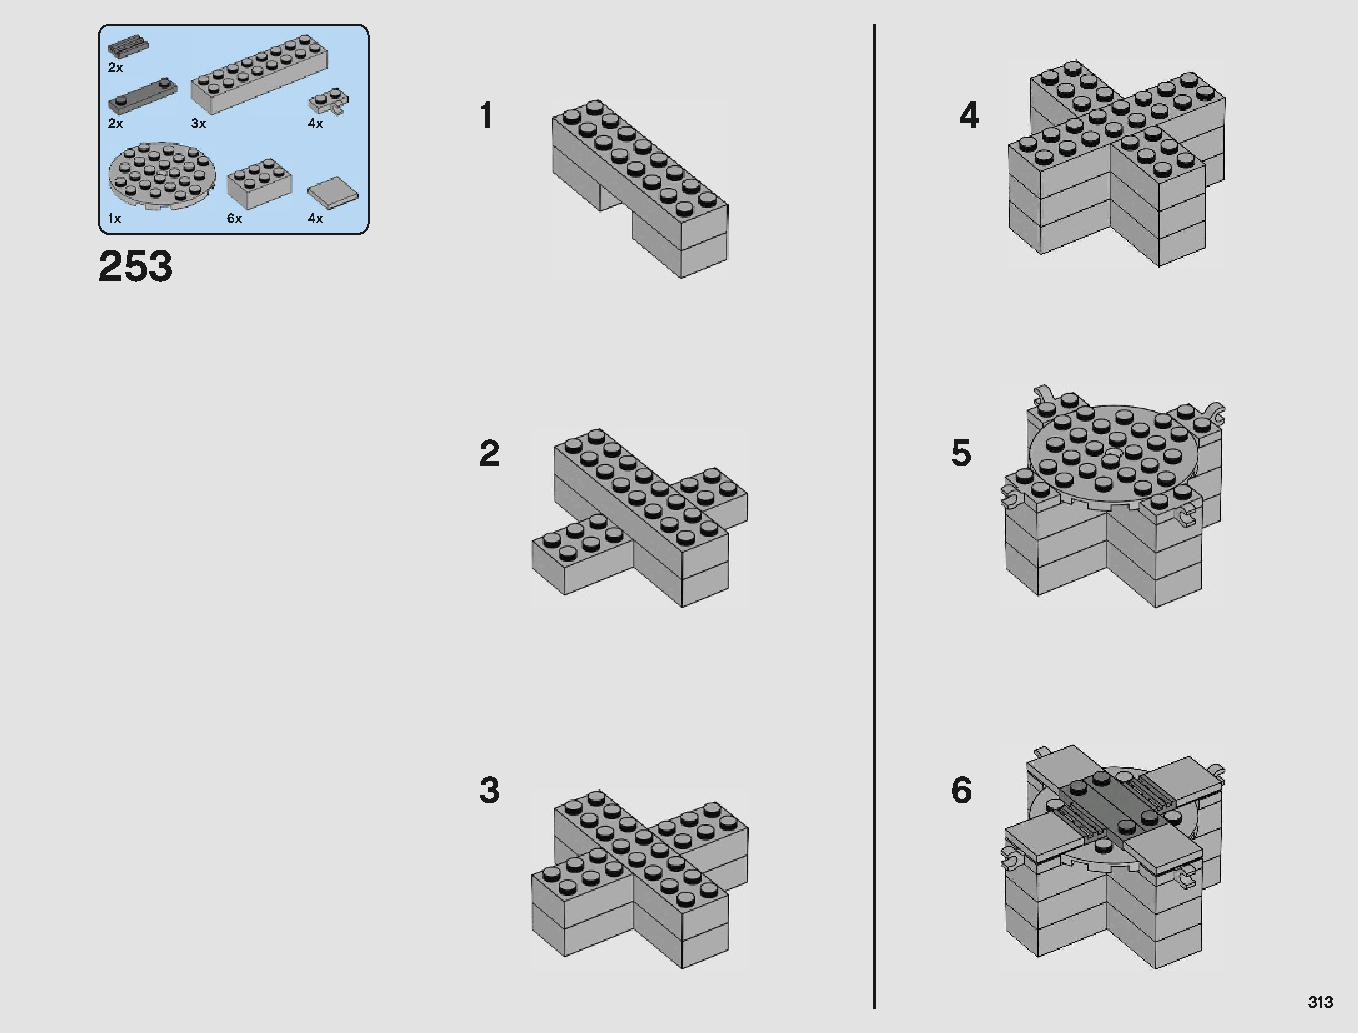 クラウド・シティ 75222 レゴの商品情報 レゴの説明書・組立方法 313 page